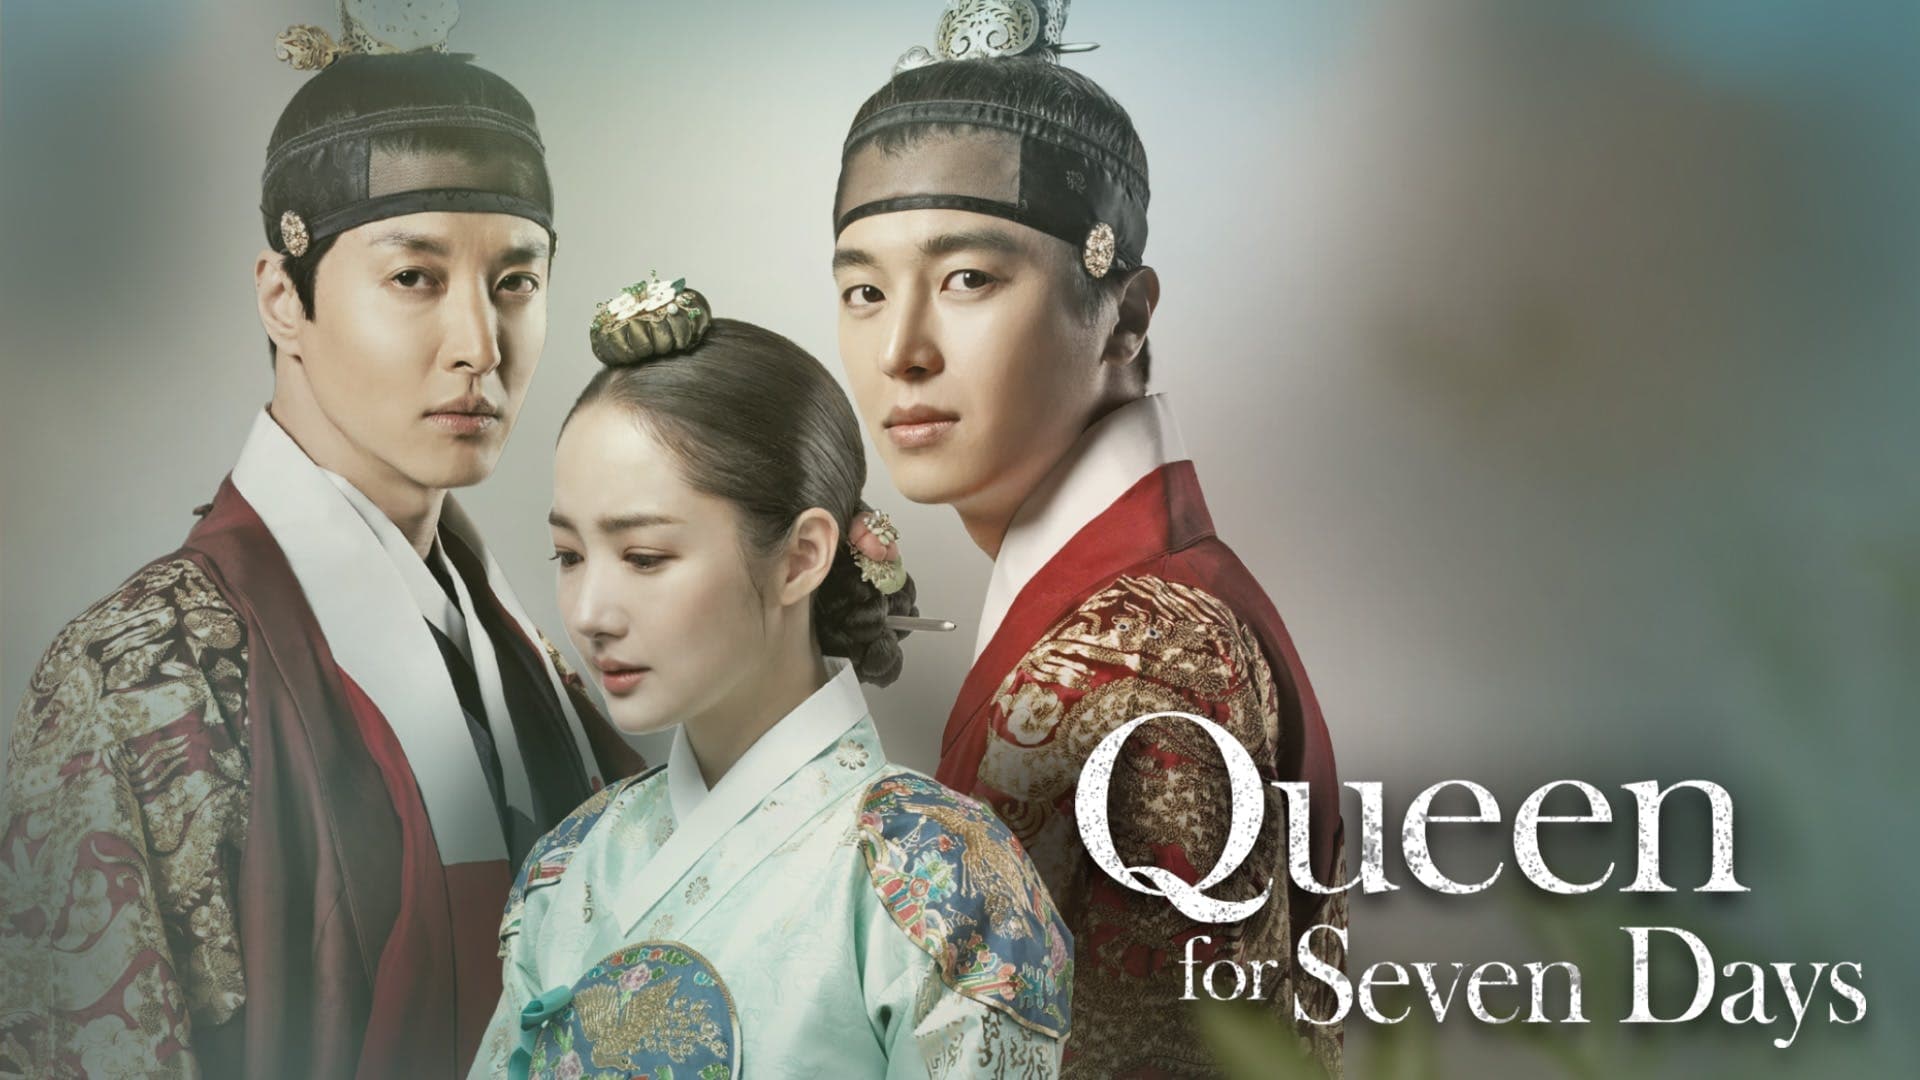 بهترین فیلم و سریال های پارک مین یانگ - Park Min-young ؛ ملکه هفت روزه - Queen for Seven Days